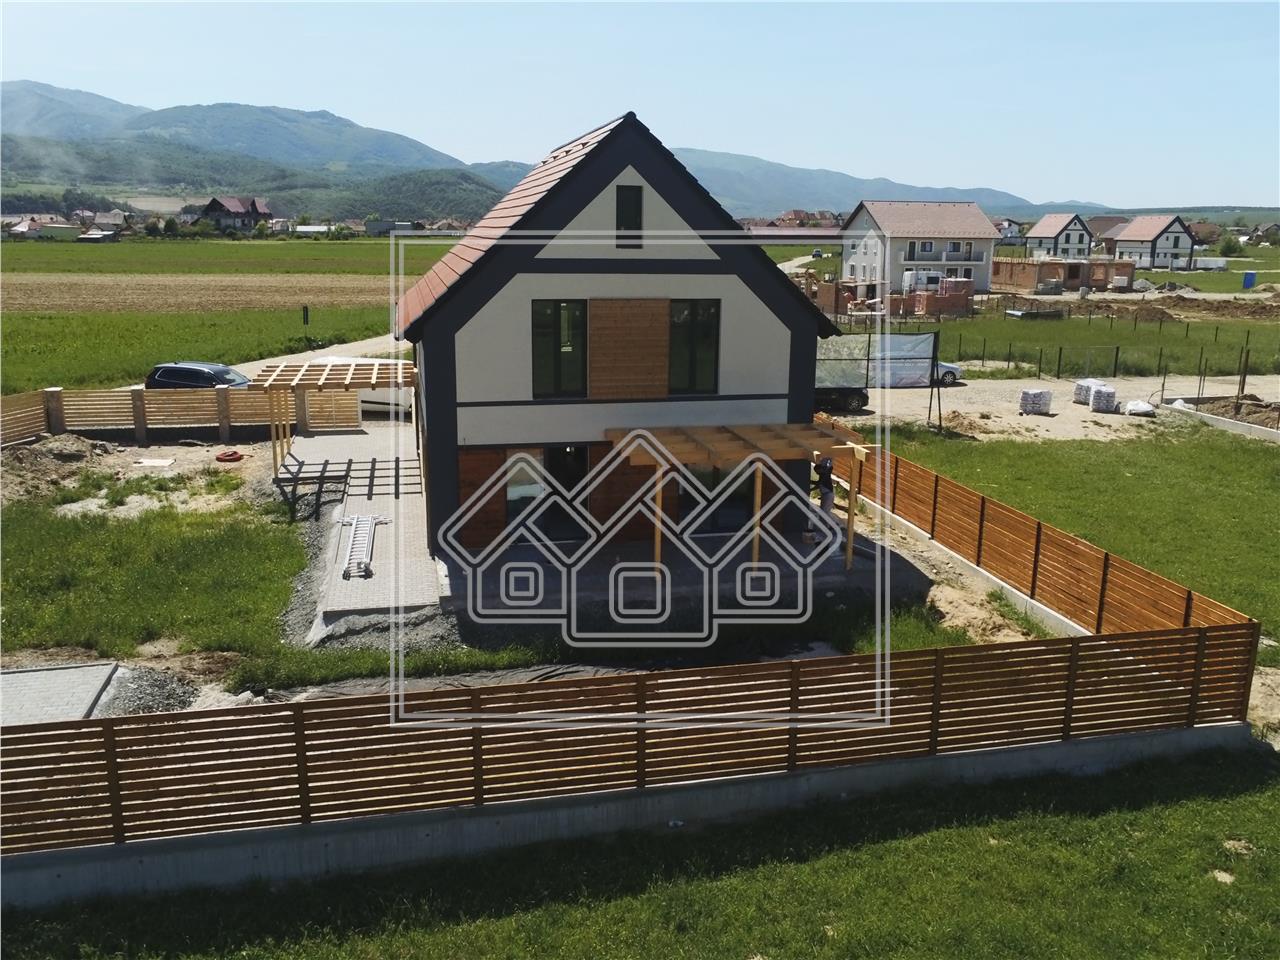 Verdi Wohnanlage - exklusiv für Häuser - Immobilien Sibiu